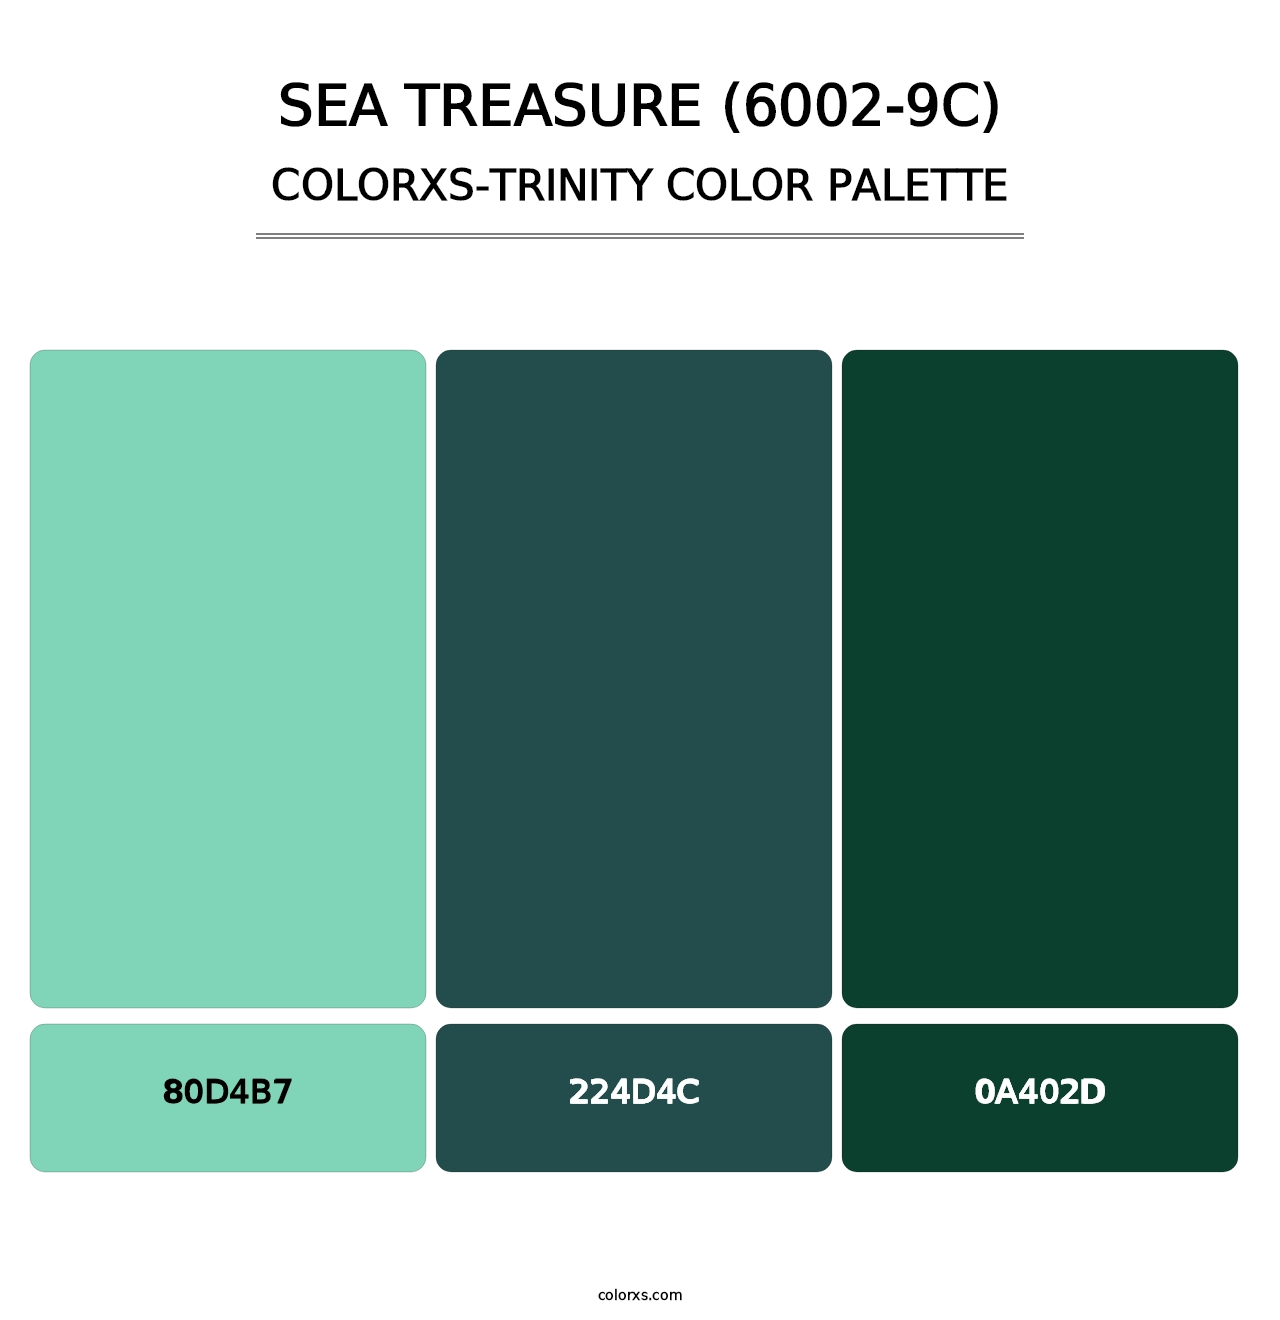 Sea Treasure (6002-9C) - Colorxs Trinity Palette